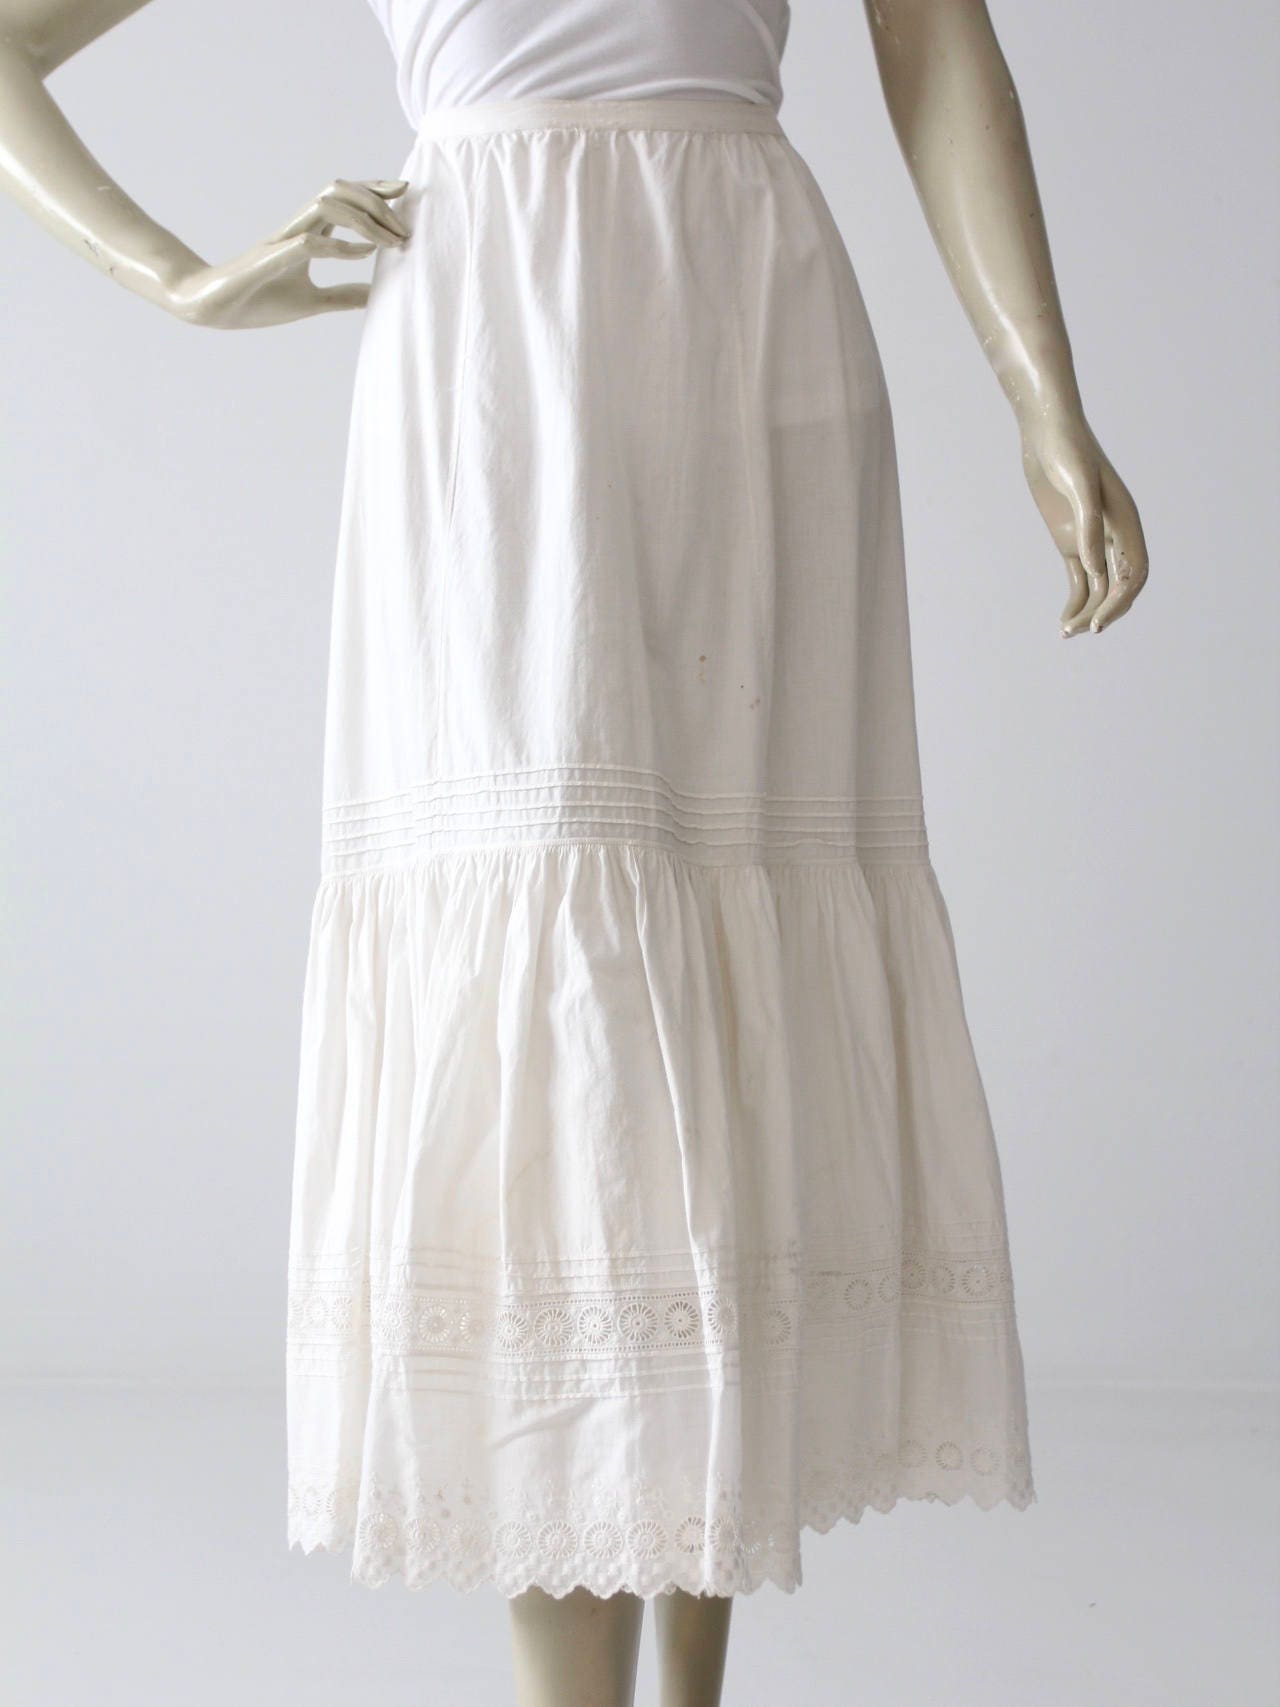 Victorian petticoat antique white skirt eyelet underskirt | Etsy